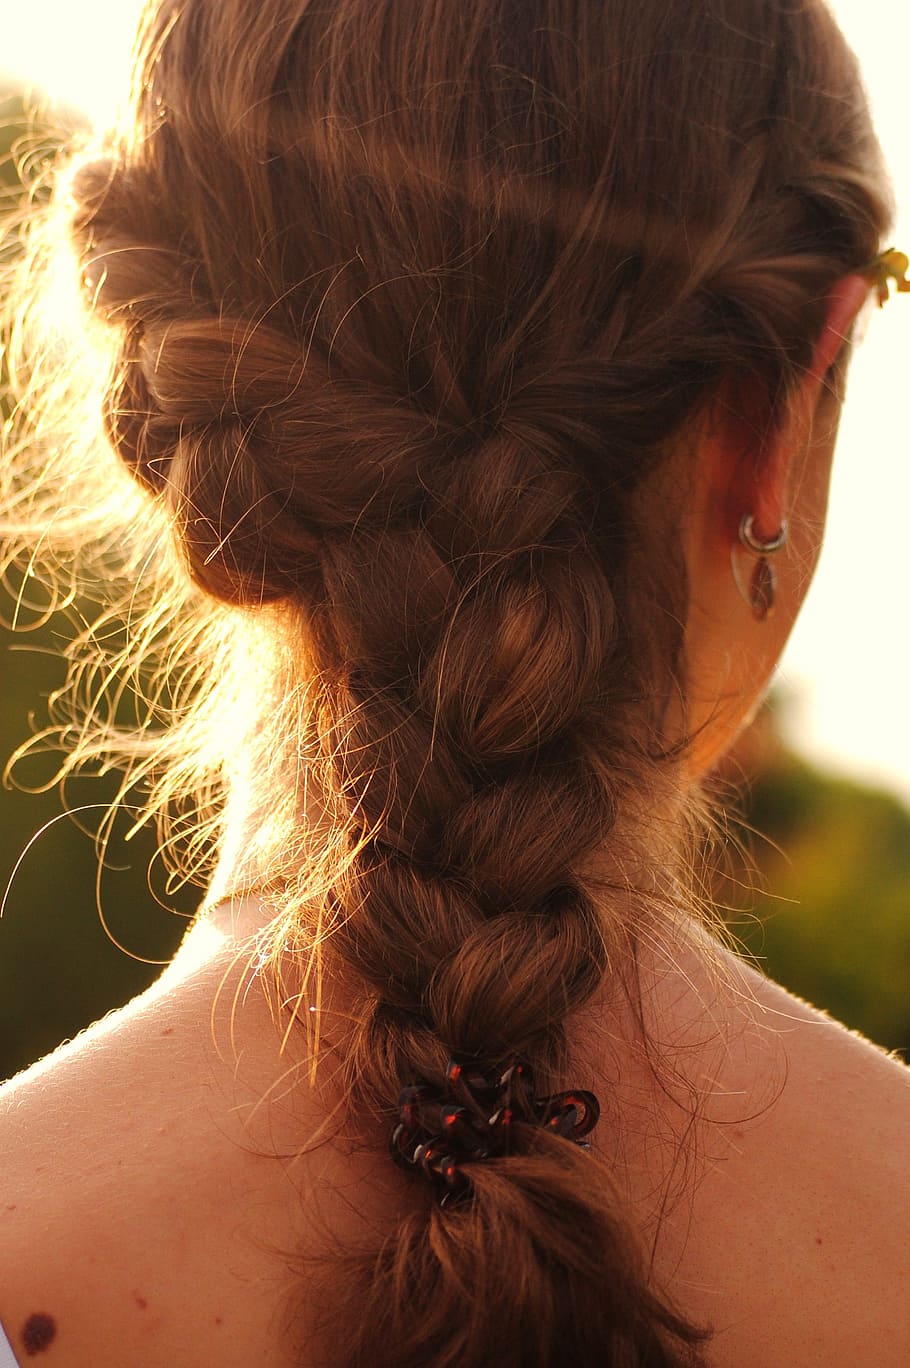 woman, showing, fishtail braid hair, plait, woven, hairstyle, hair, one person, women, headshot